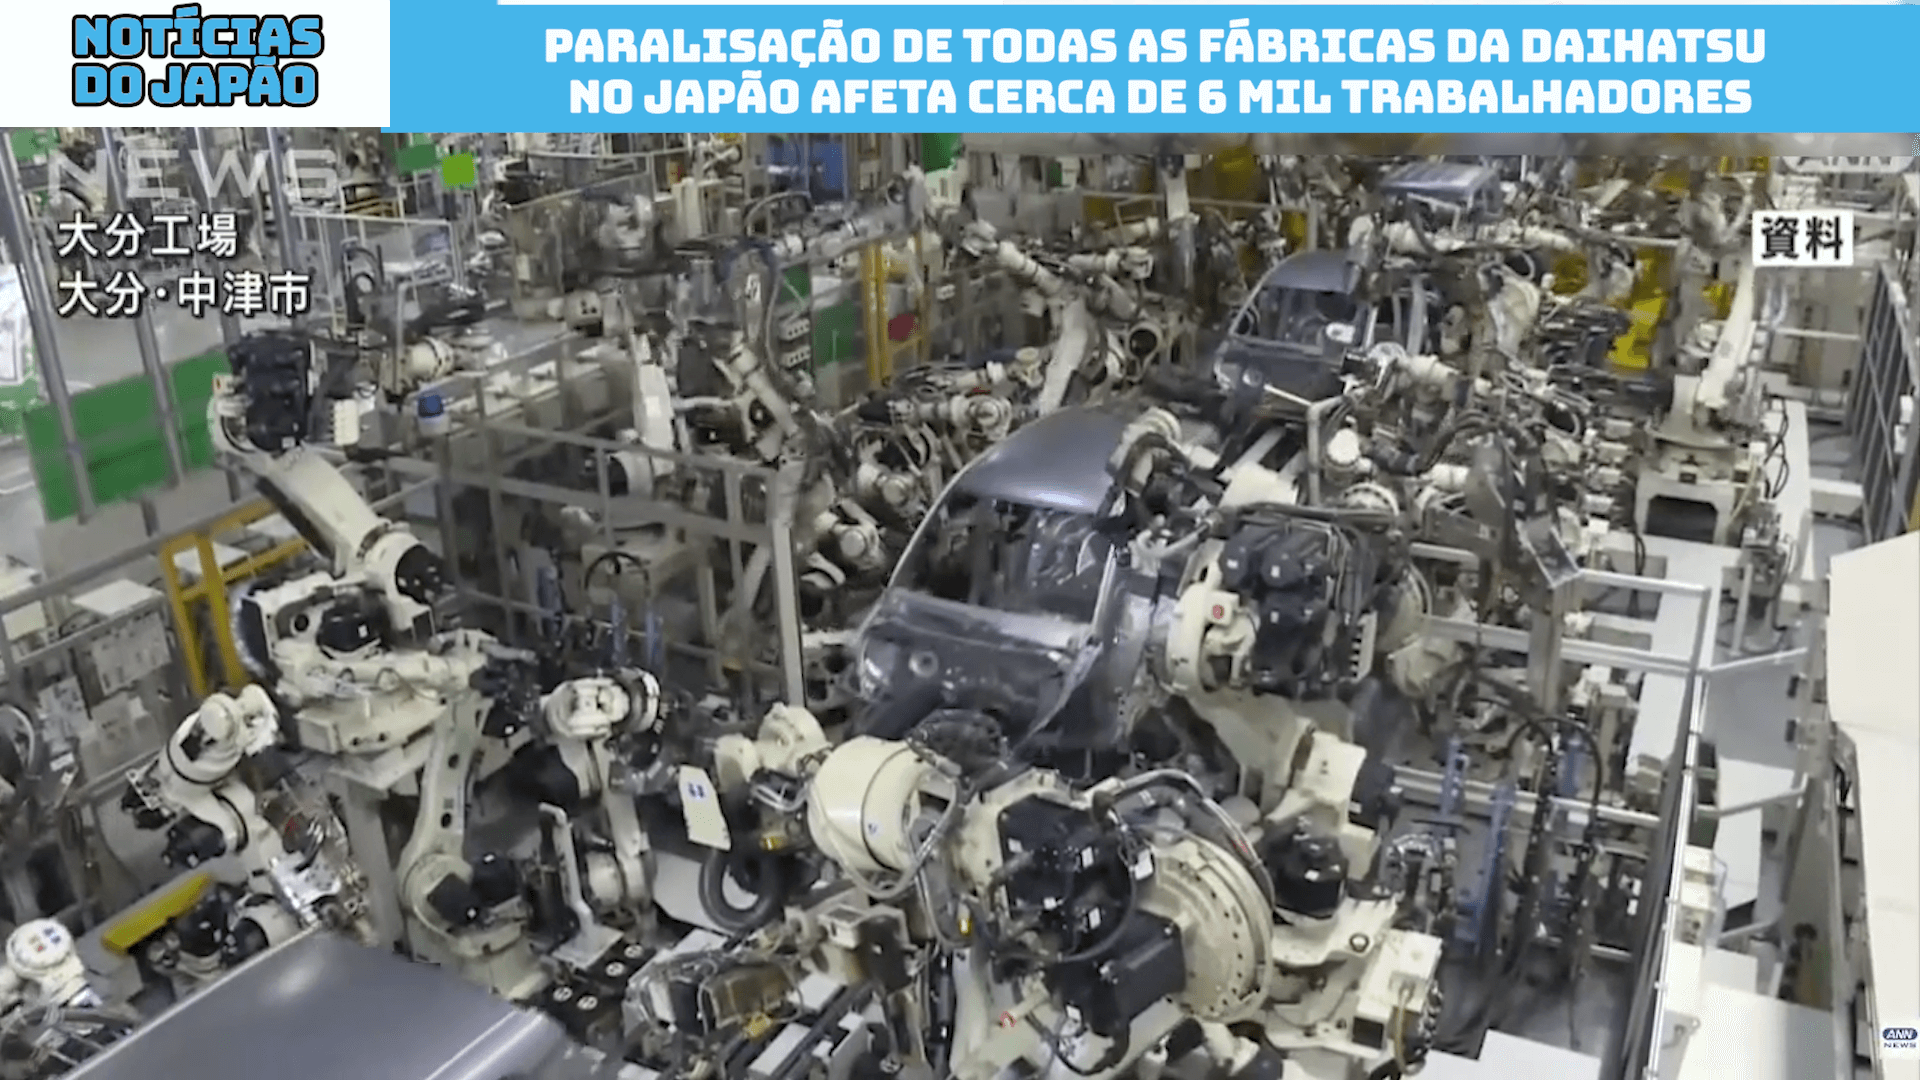 Paralisação de todas as fábricas da Daihatsu no Japão afeta cerca de 6 mil trabalhadores 